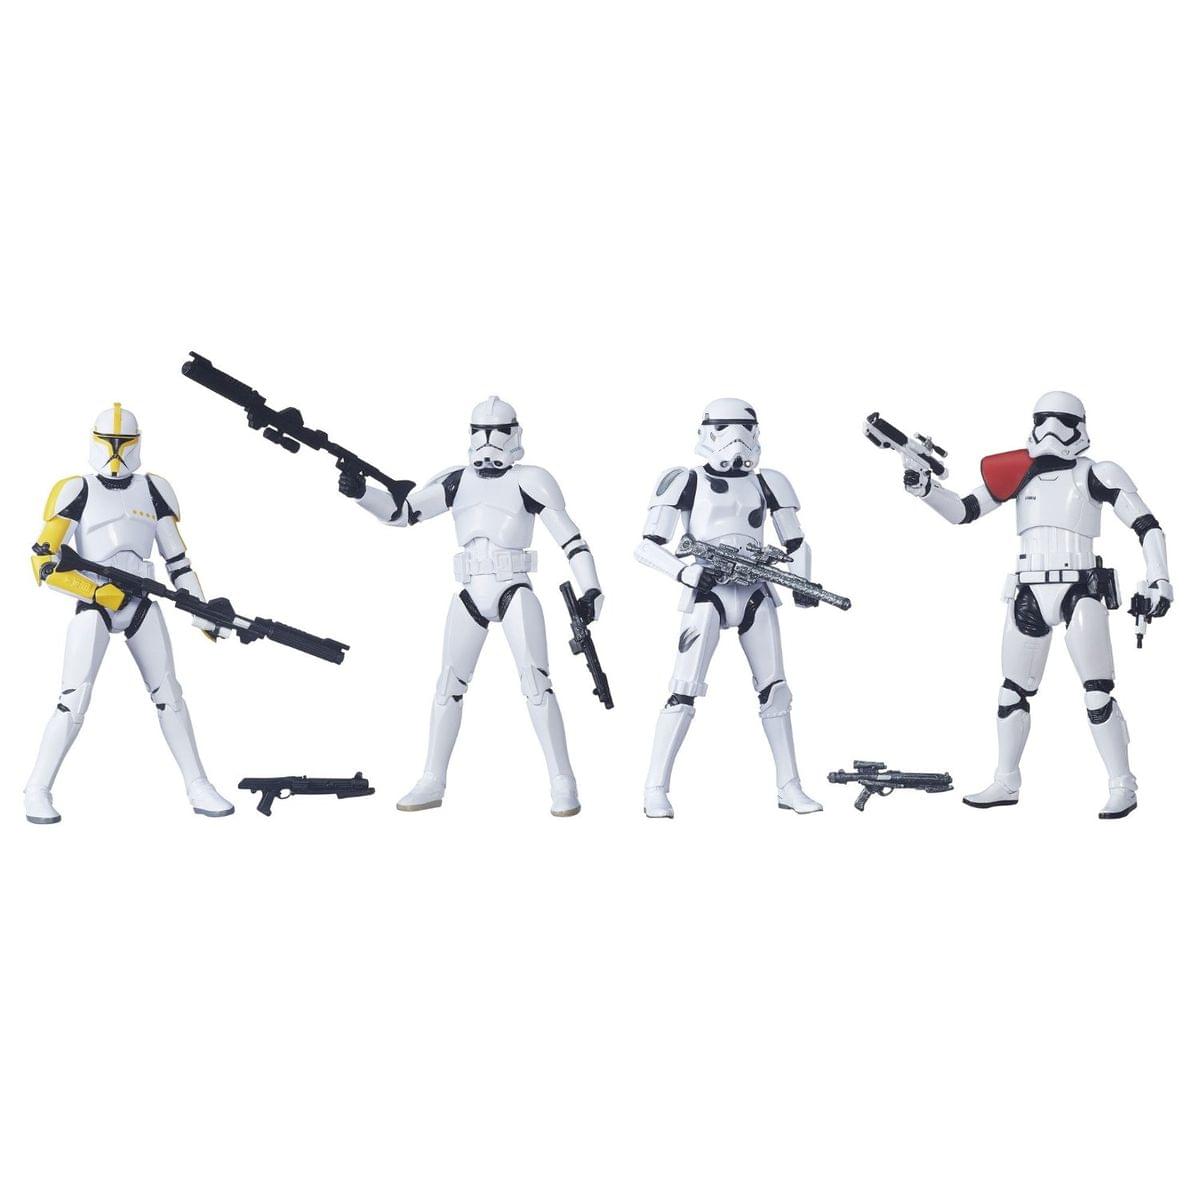 Star Wars 6" Black Series Stormtrooper Action Figure 4-Pack